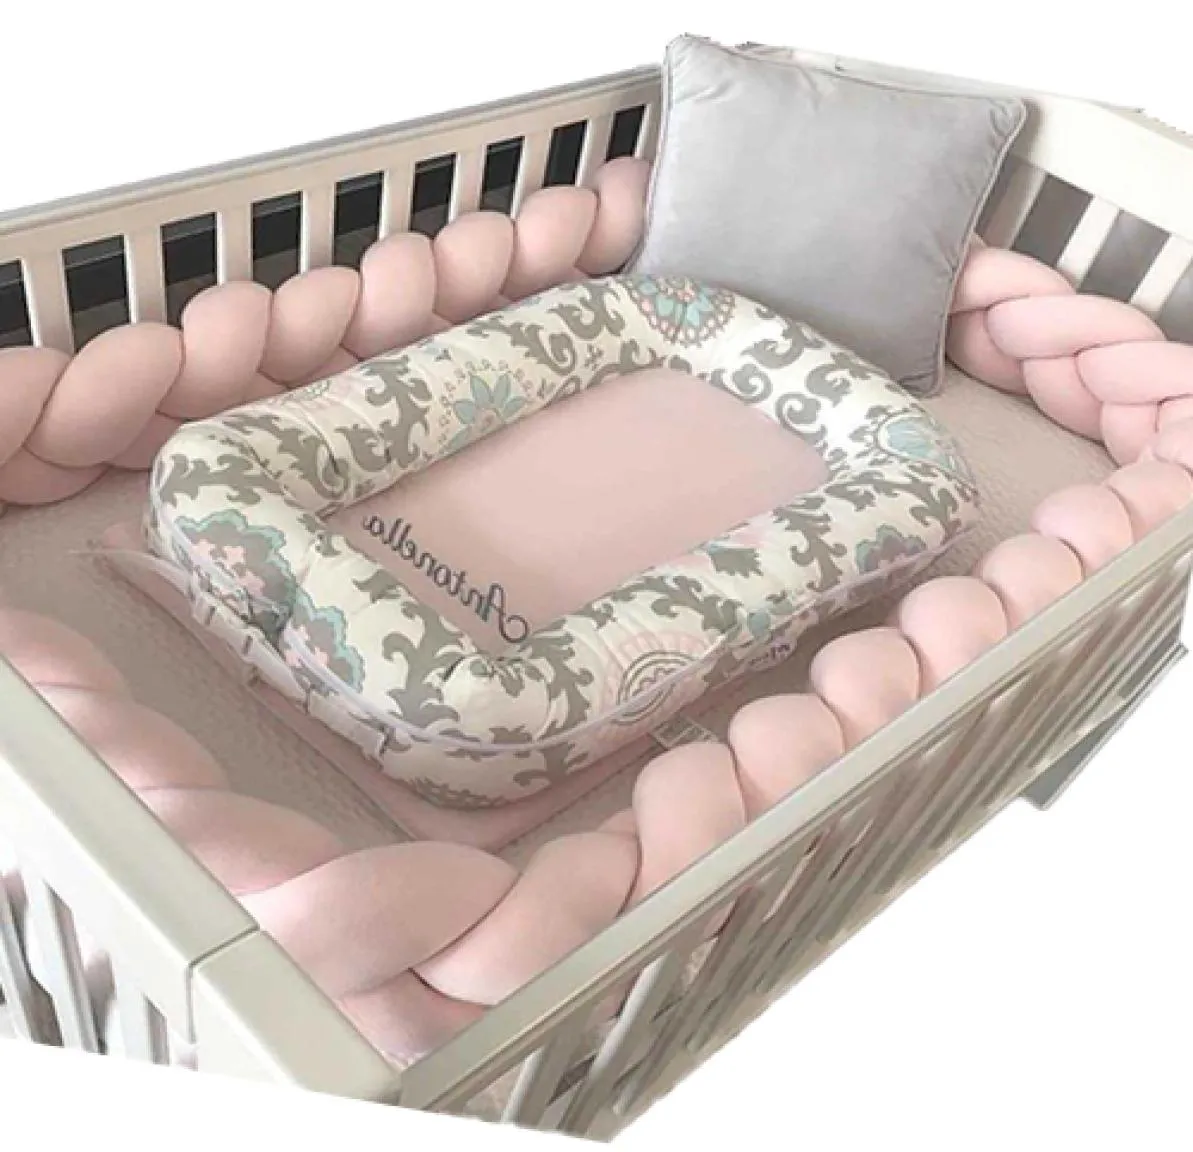 Baby Bumper łóżko Plejone łóżeczko dla chłopców dziewcząt niemowlę chrońca łóżeczko zderzak deta bebe tresse pokój wystrój Q08281430746